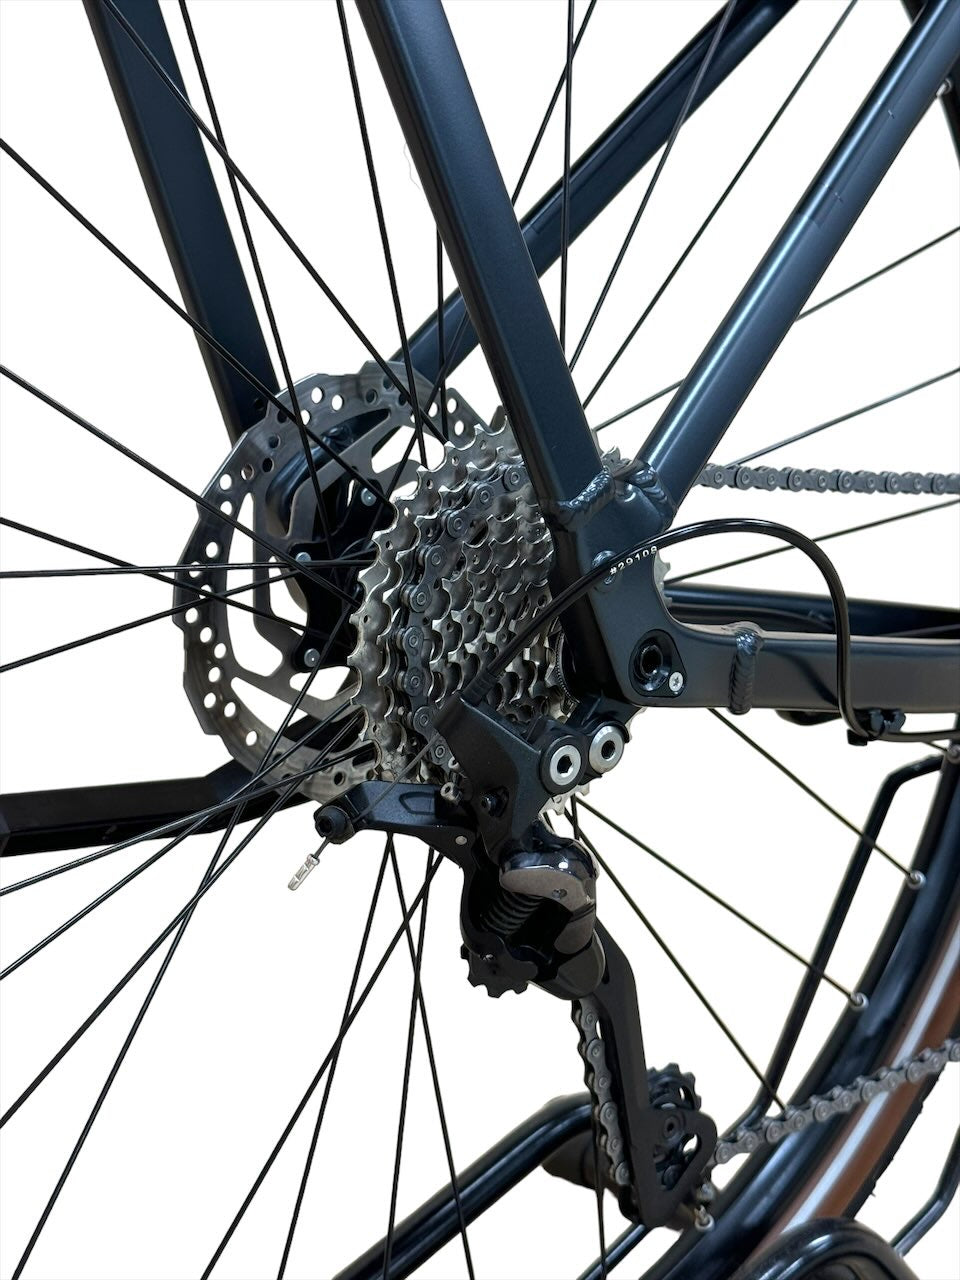 <tc>Cube Kathmandu Pro 28 pulgadas bicicleta king</tc>